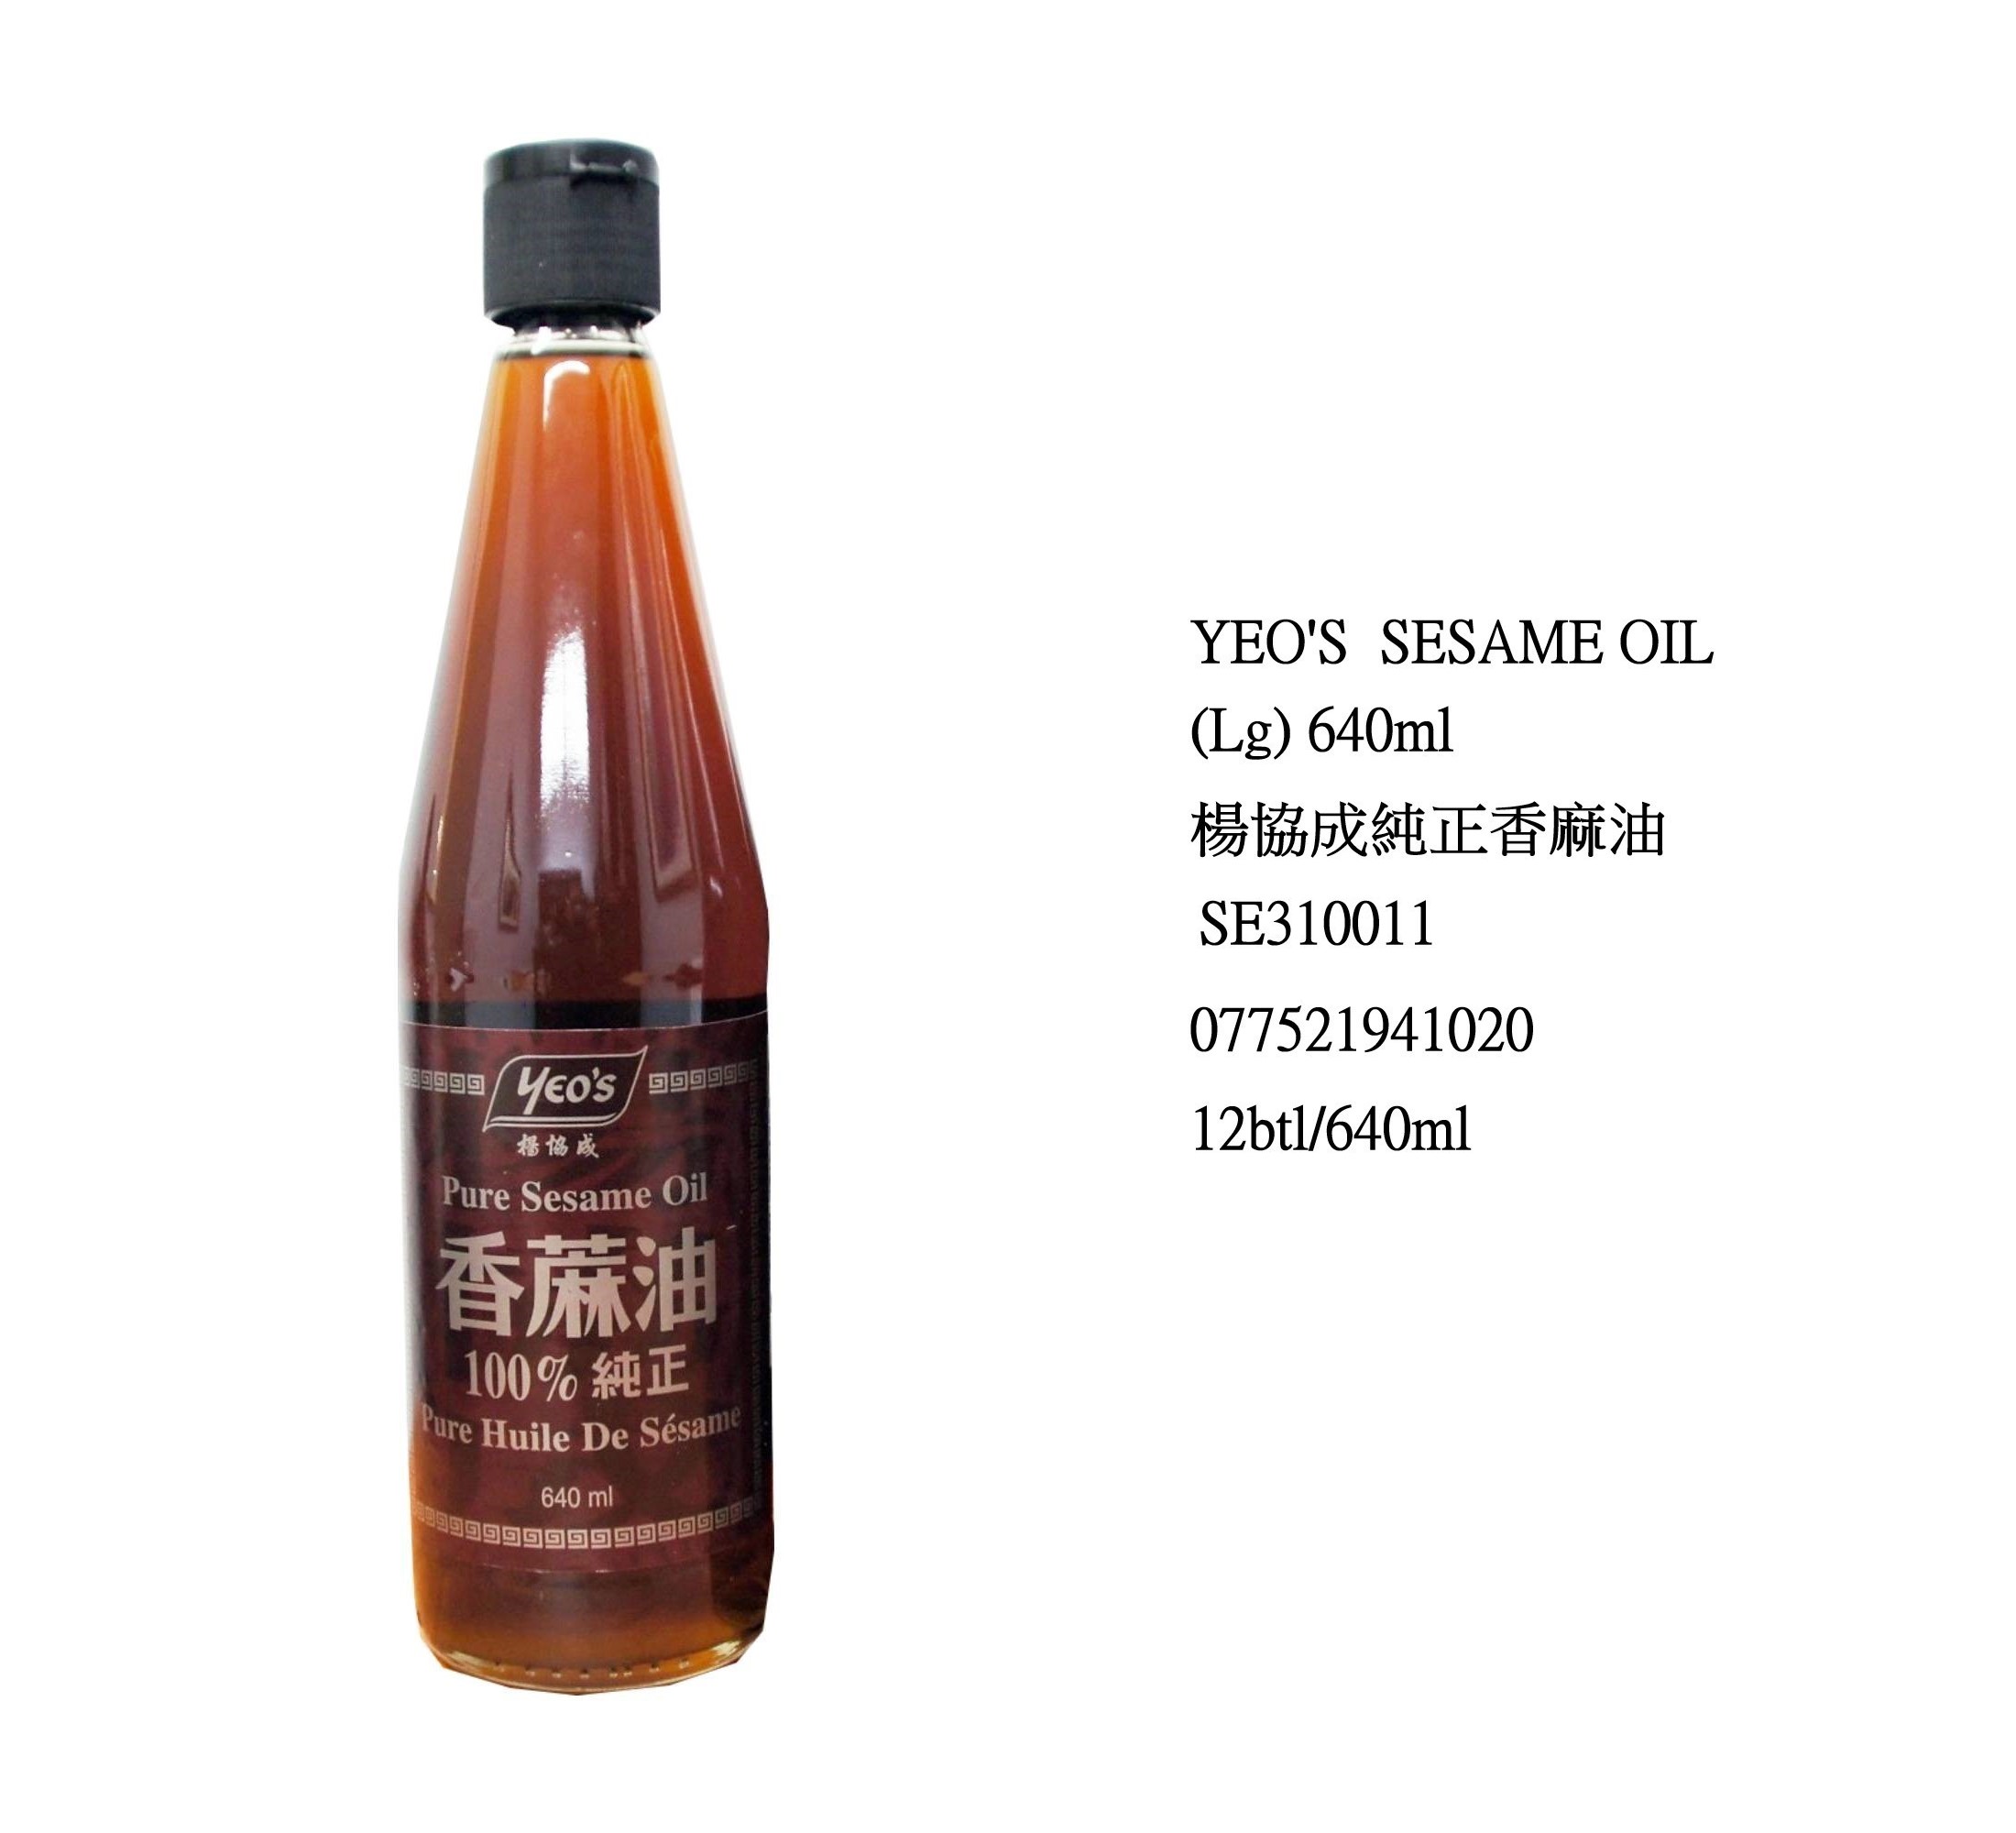 YEO'S SESAME OIL (LG) SE310011